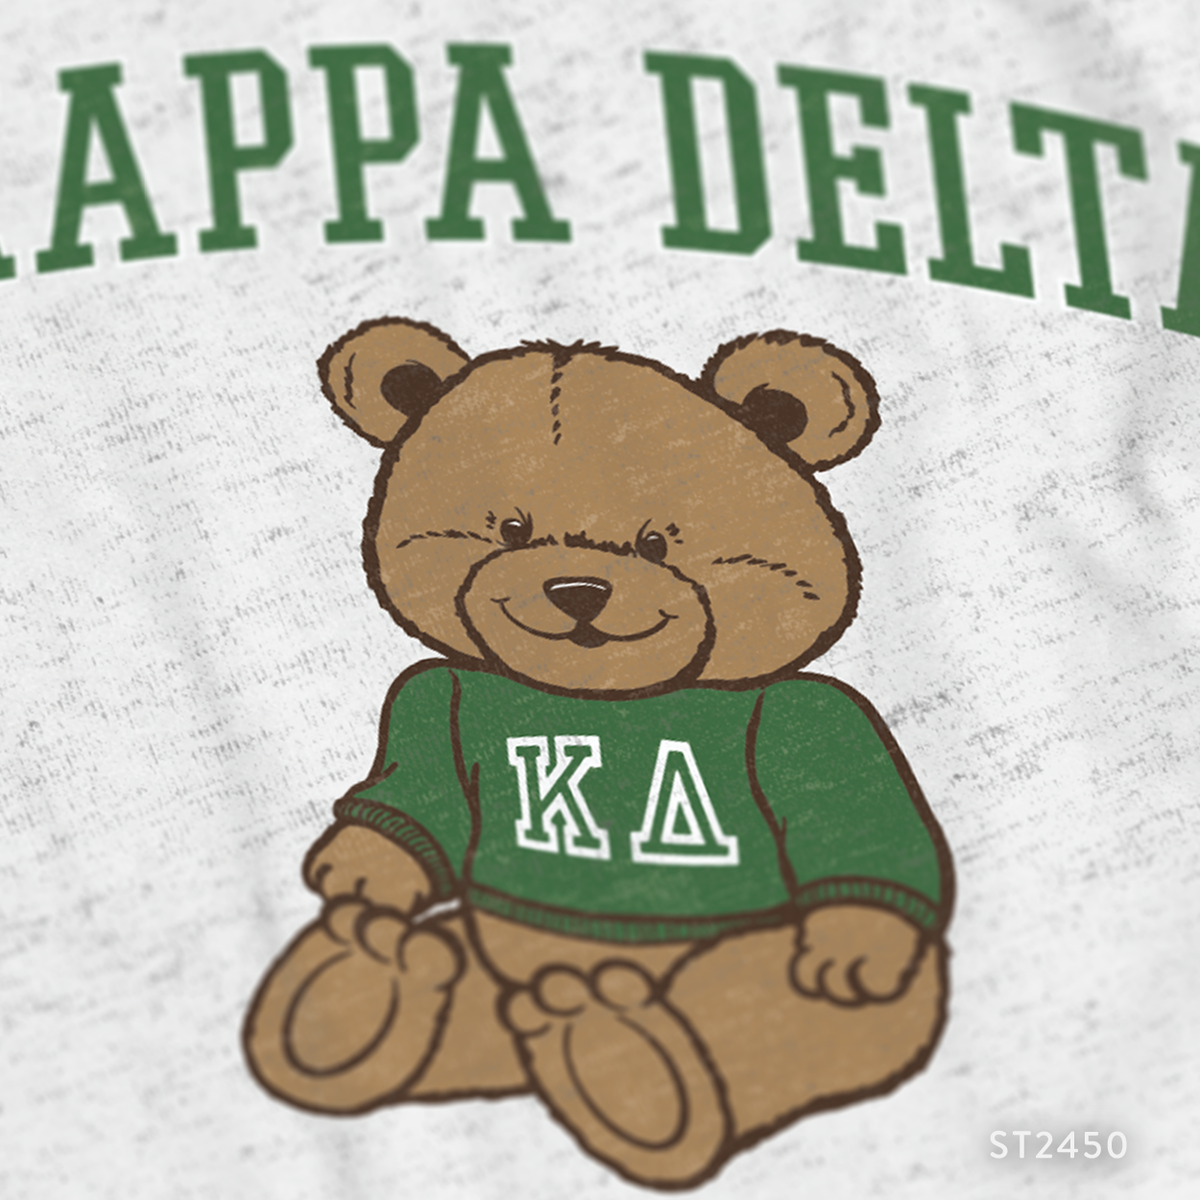 Kappa Delta Teddy Bear PR T-Shirt Design